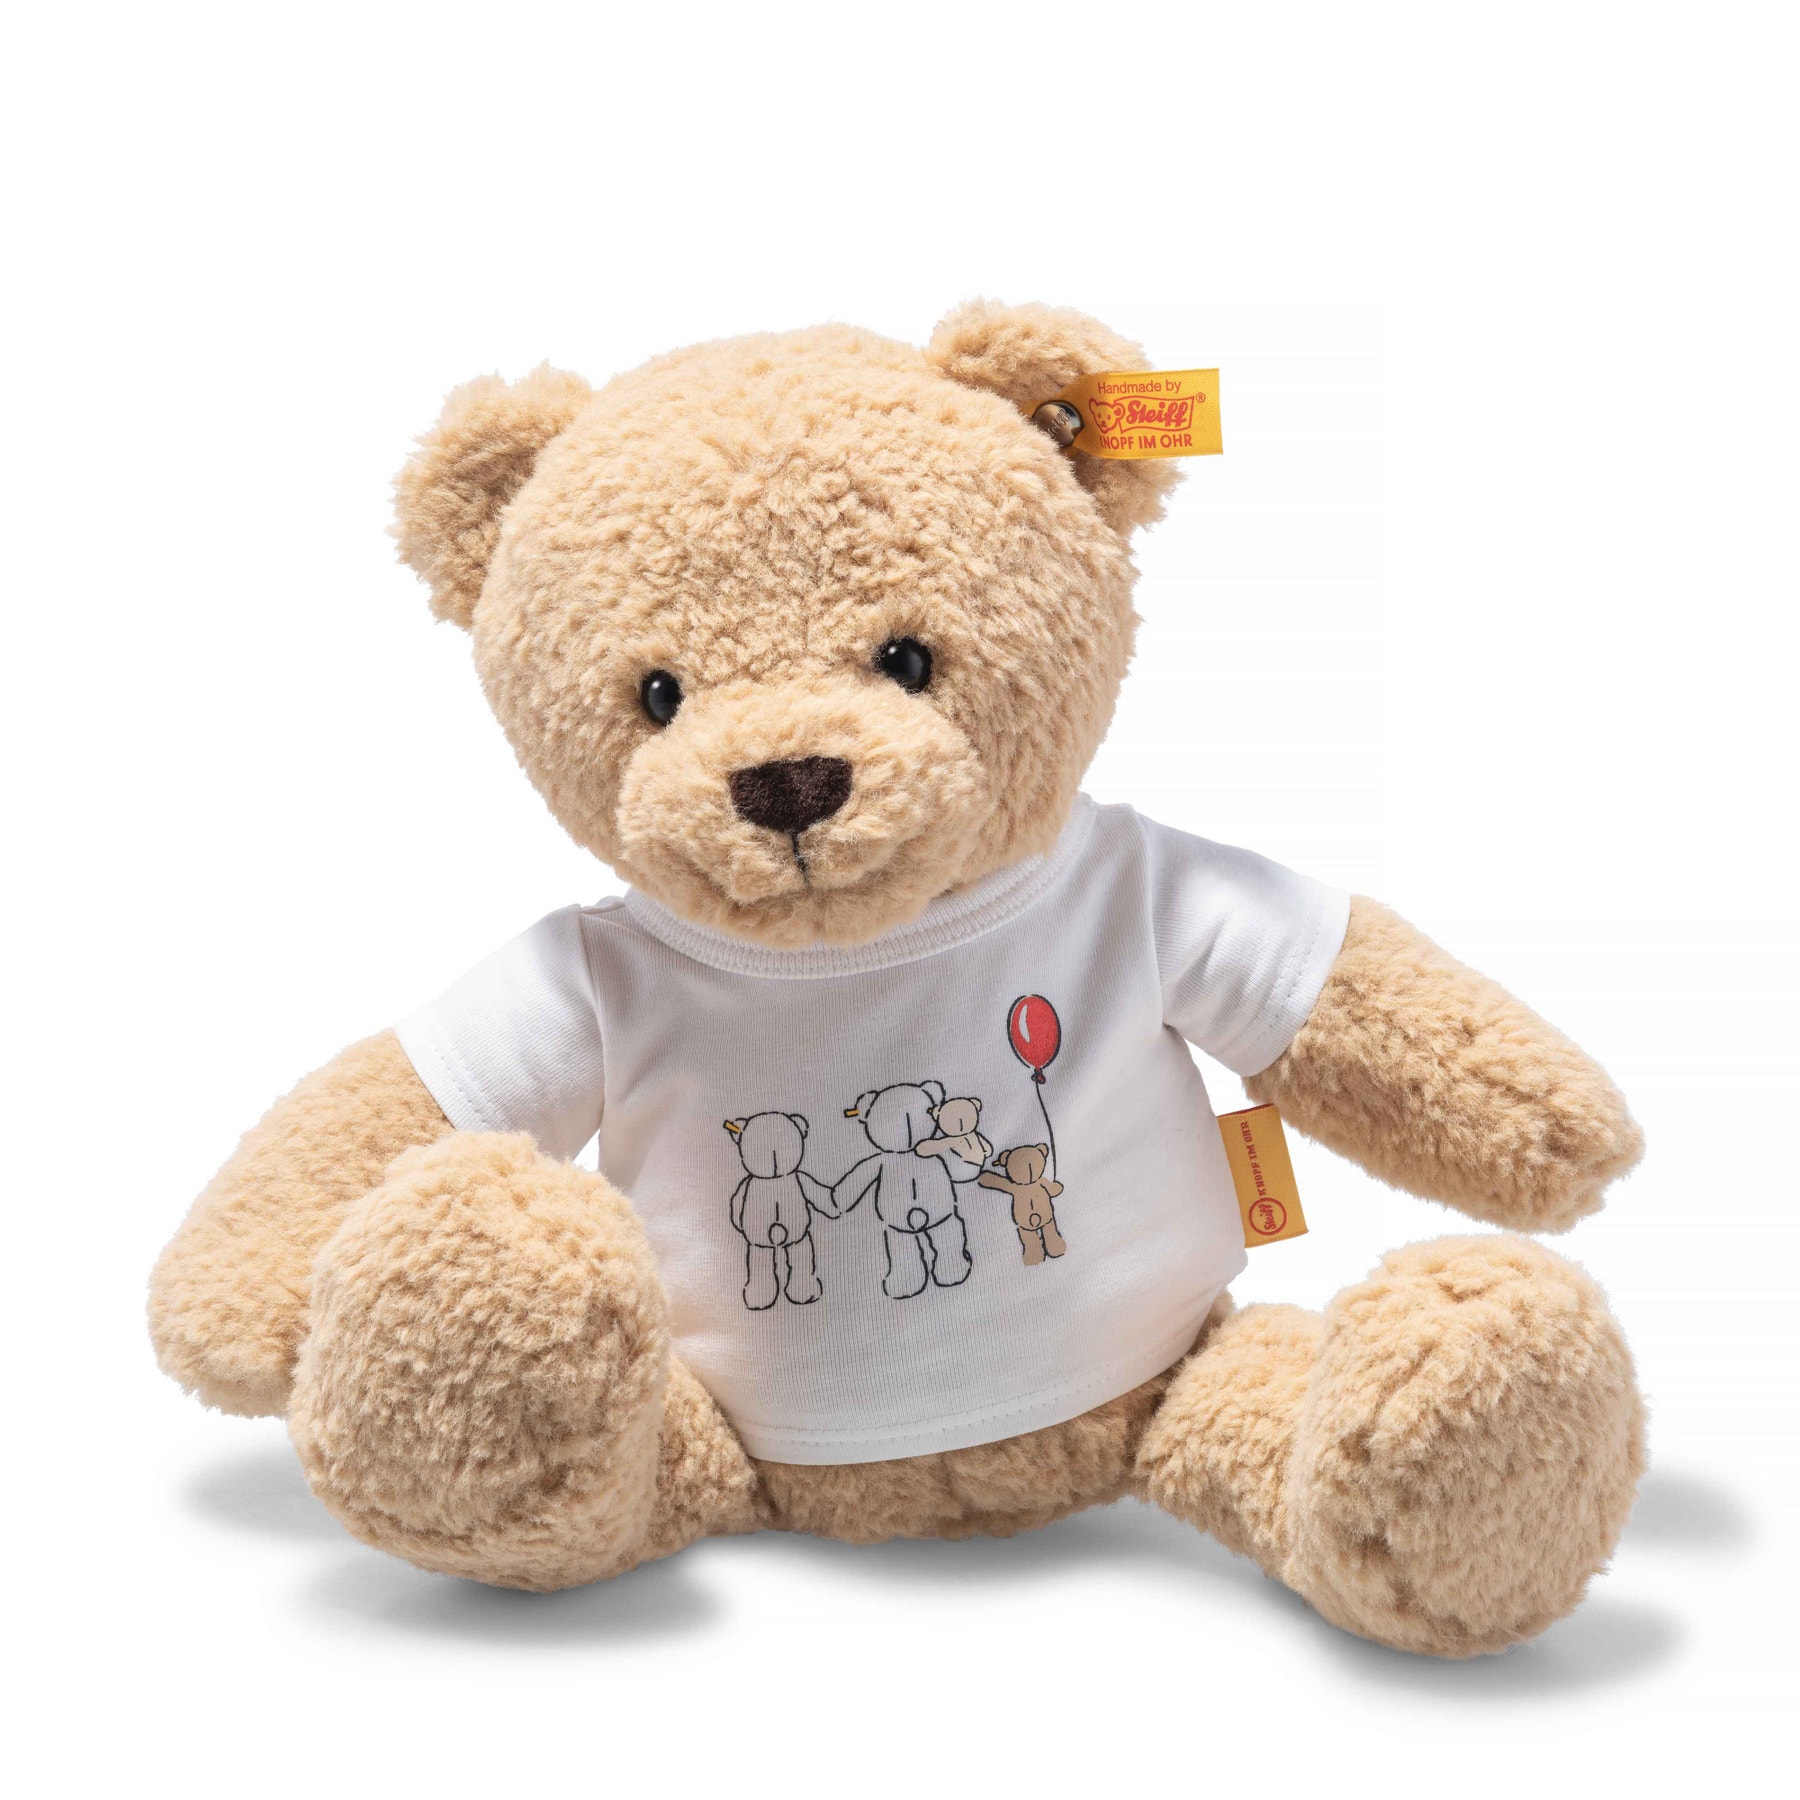 Ben Teddy bear with T-shirt